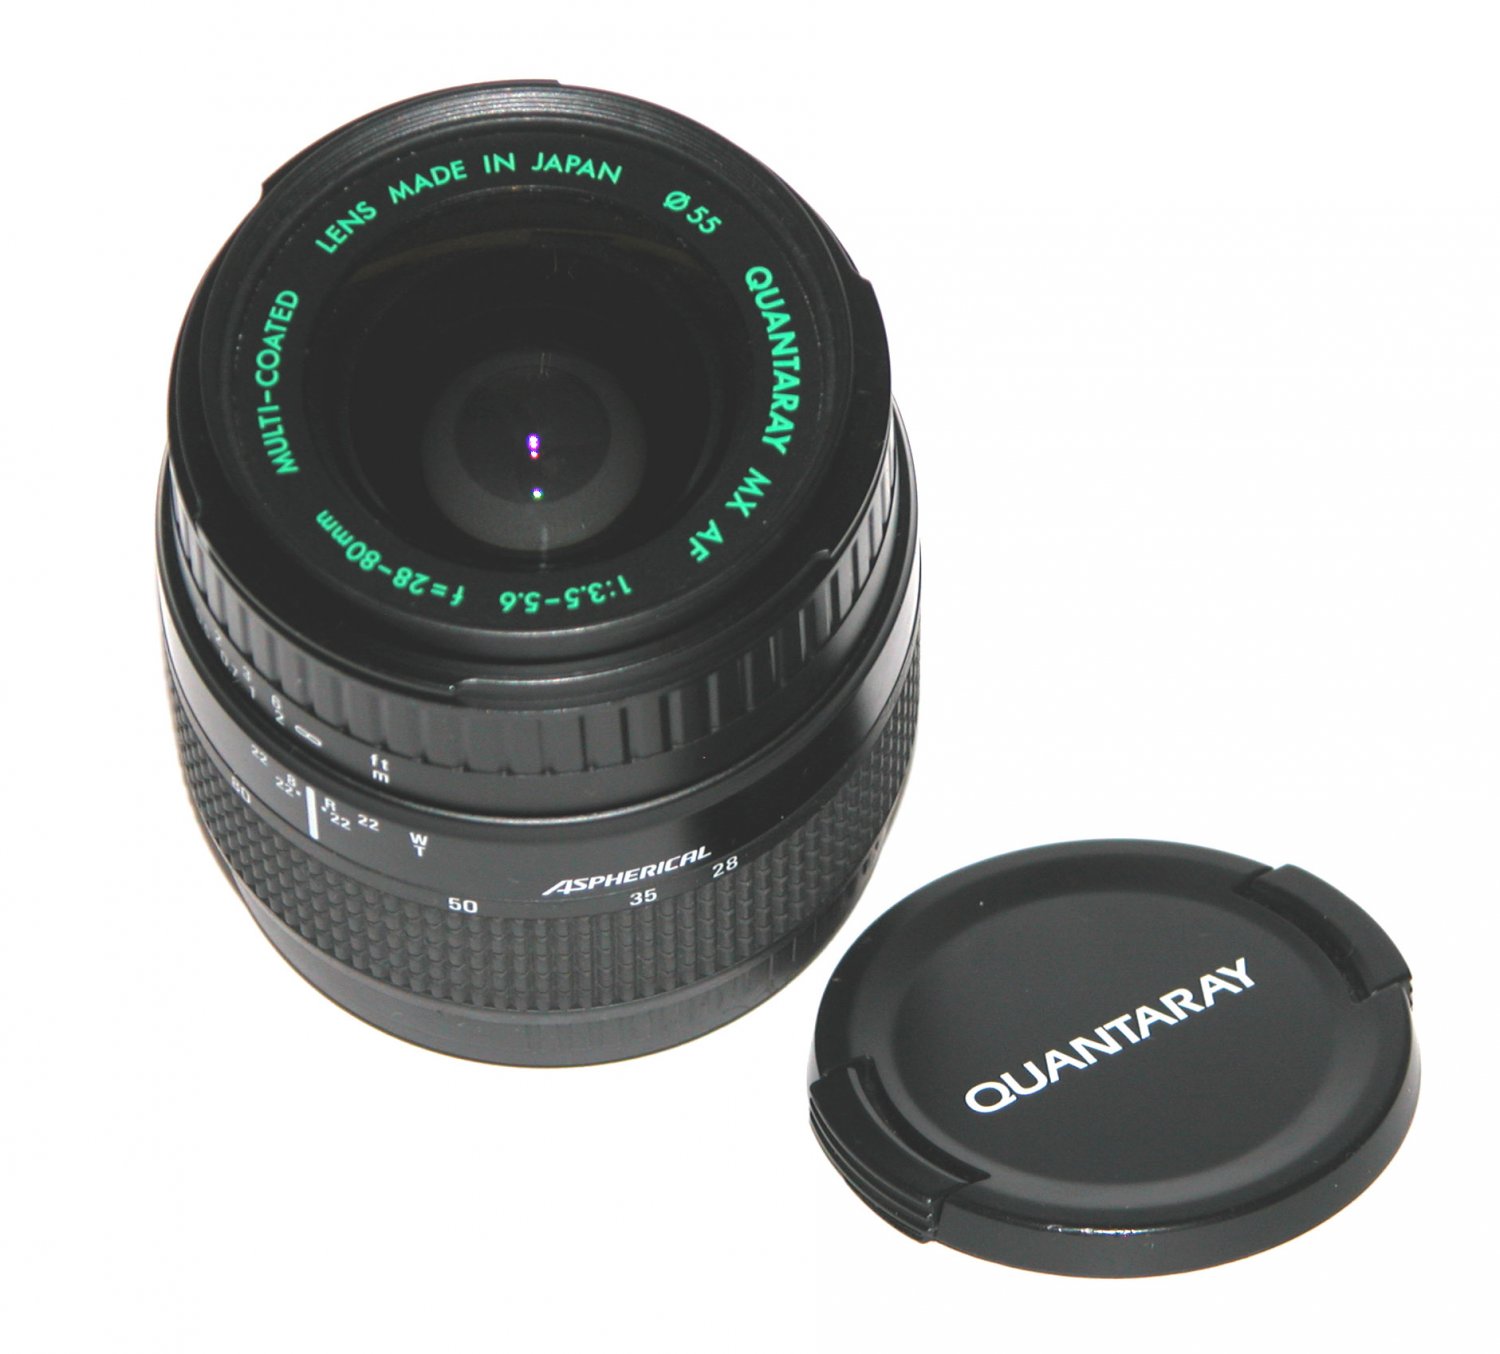 Quantaray AF 28-80mm 1:3.5-5.6 Lens For Minolta #5675